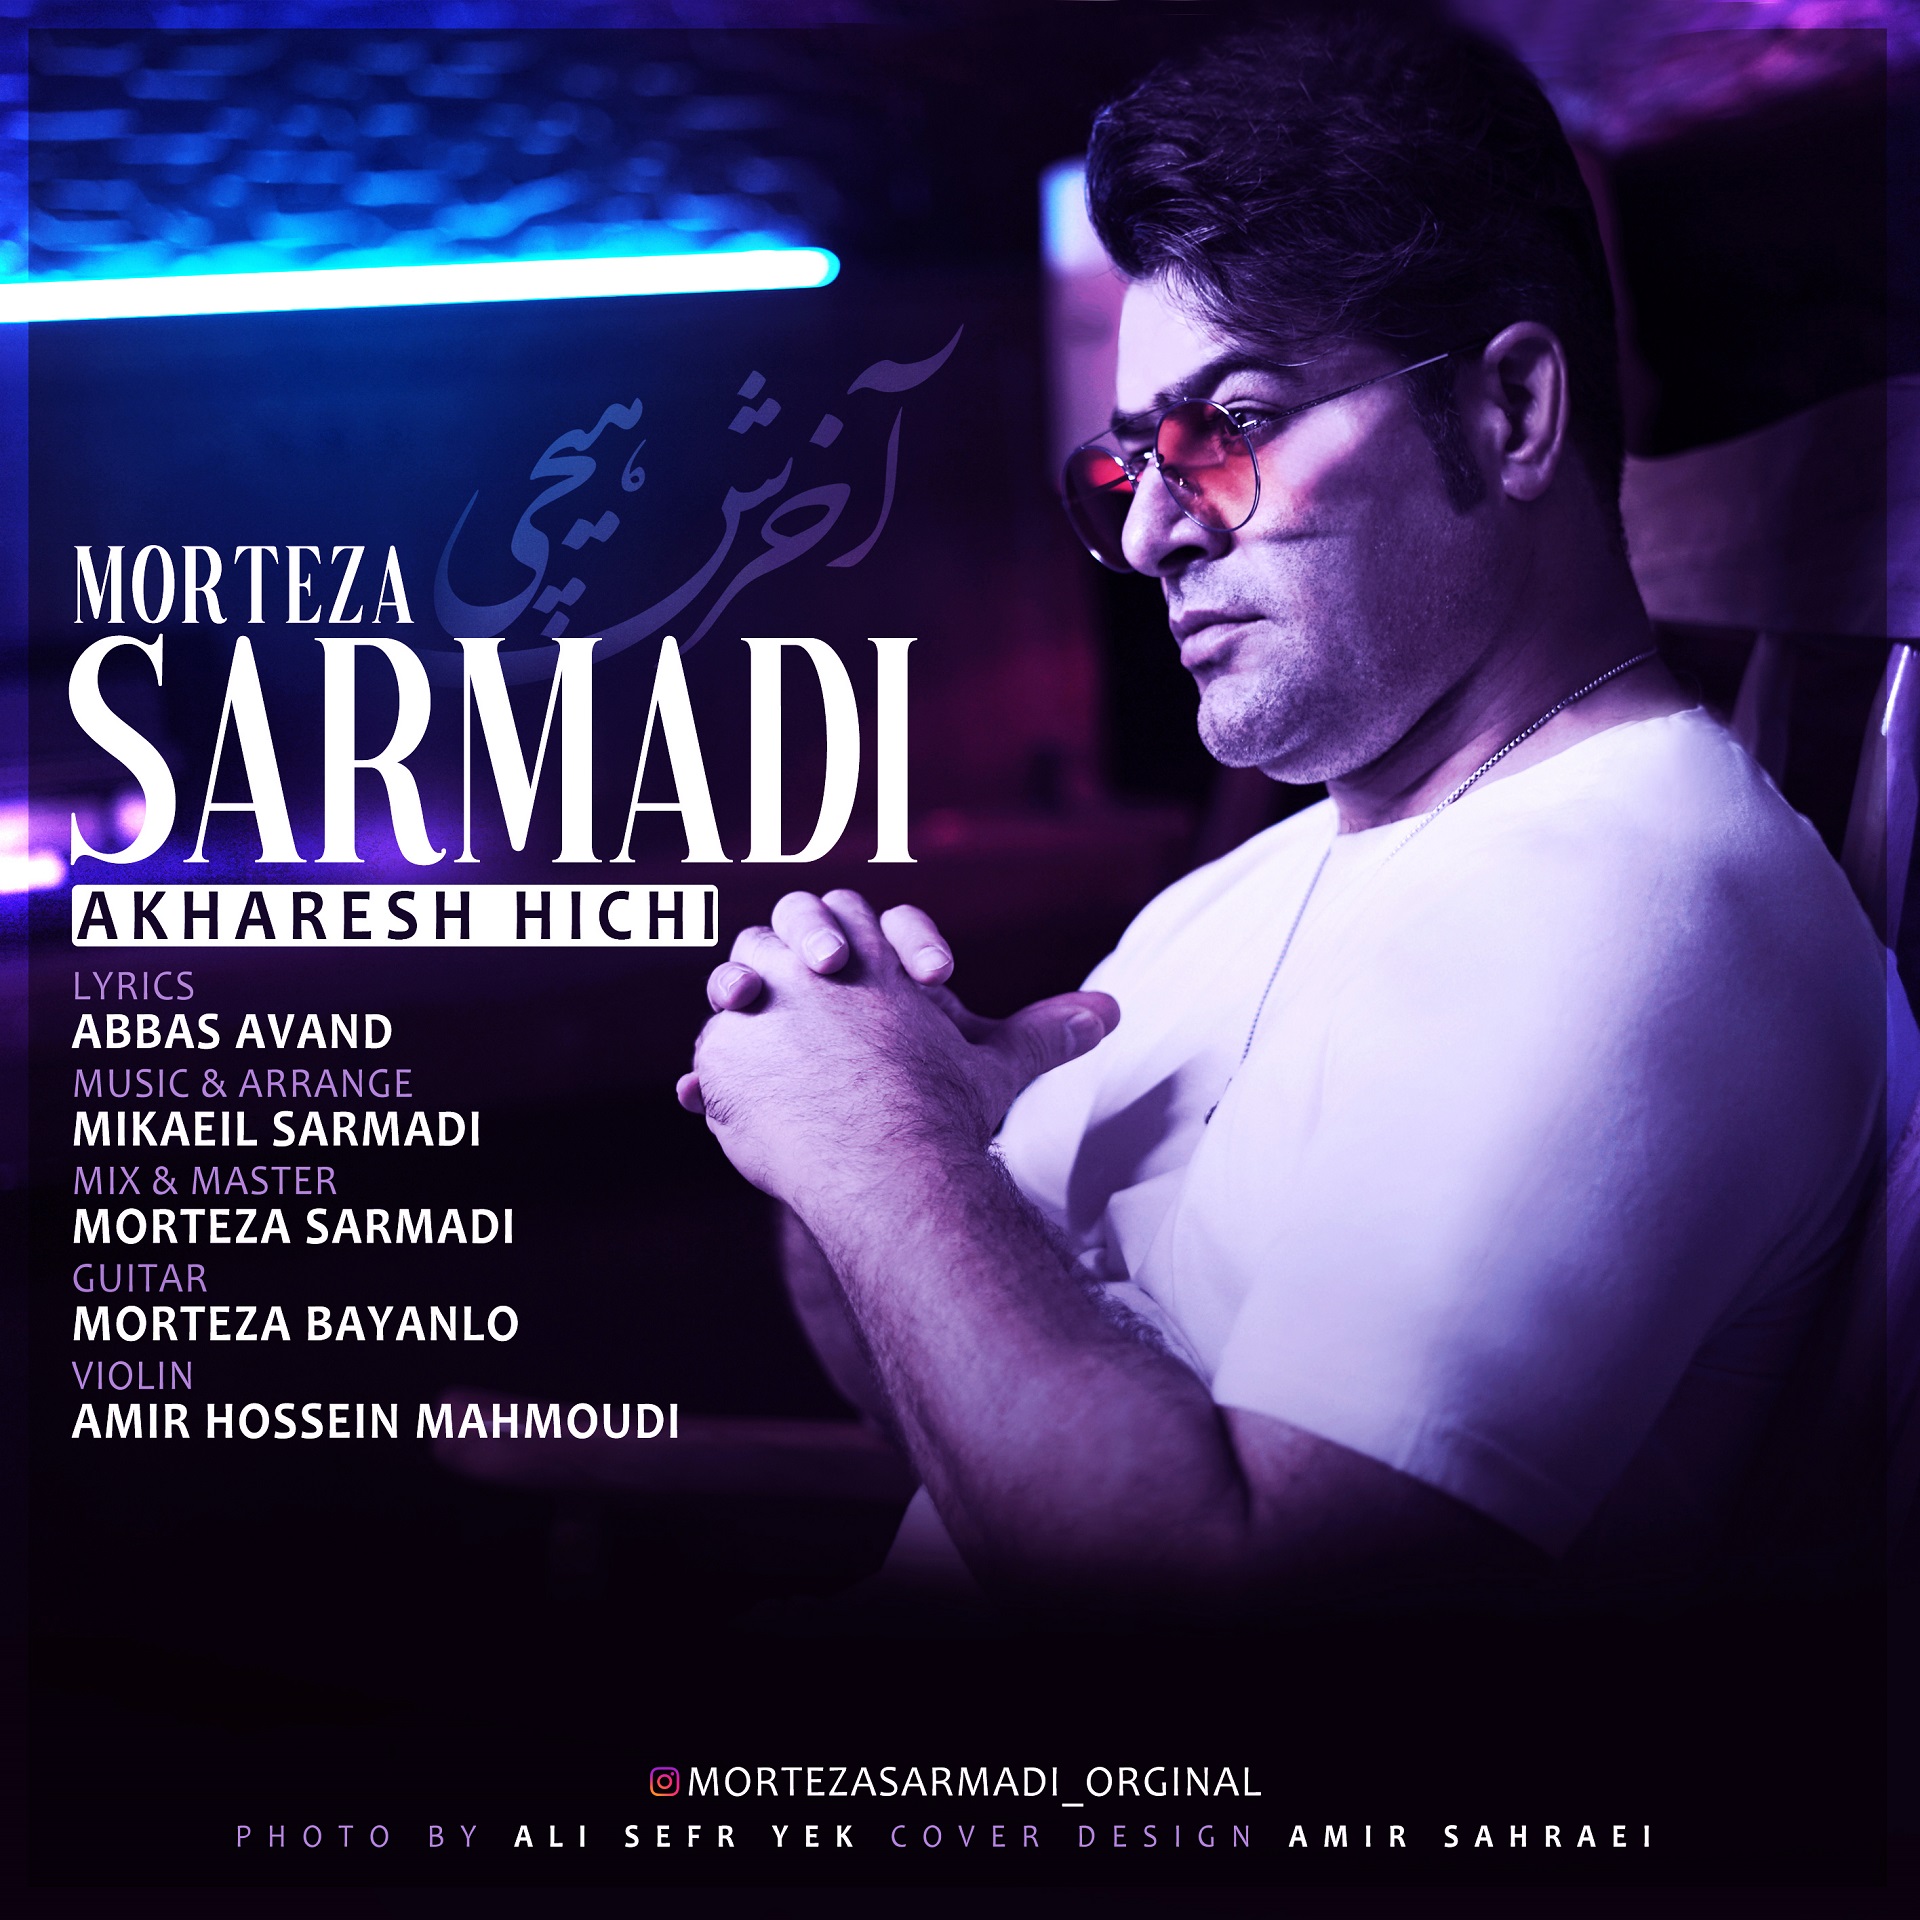  دانلود آهنگ جدید مرتضی سرمدی - آخرش هیچی | Download New Music By Morteza Sarmadi - Akharesh Hichi